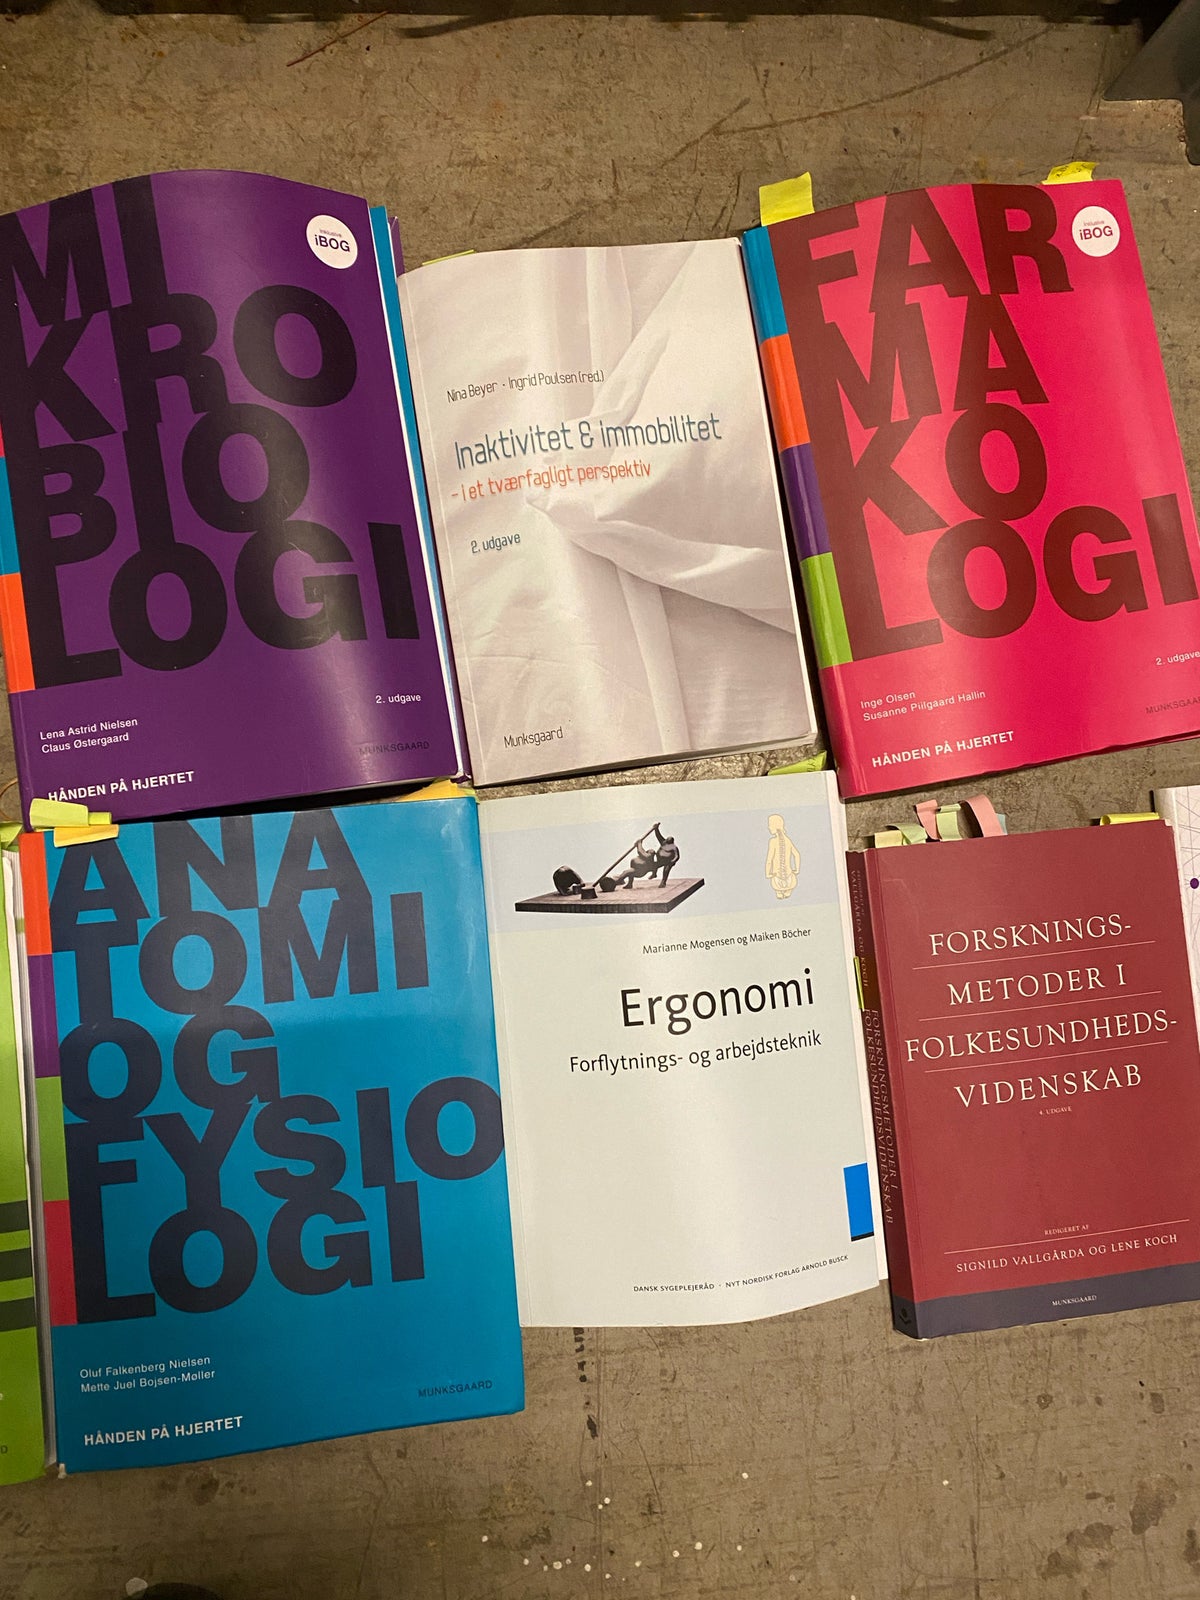 Bøger brugt på sygepleje studie. , Forskellige bøger